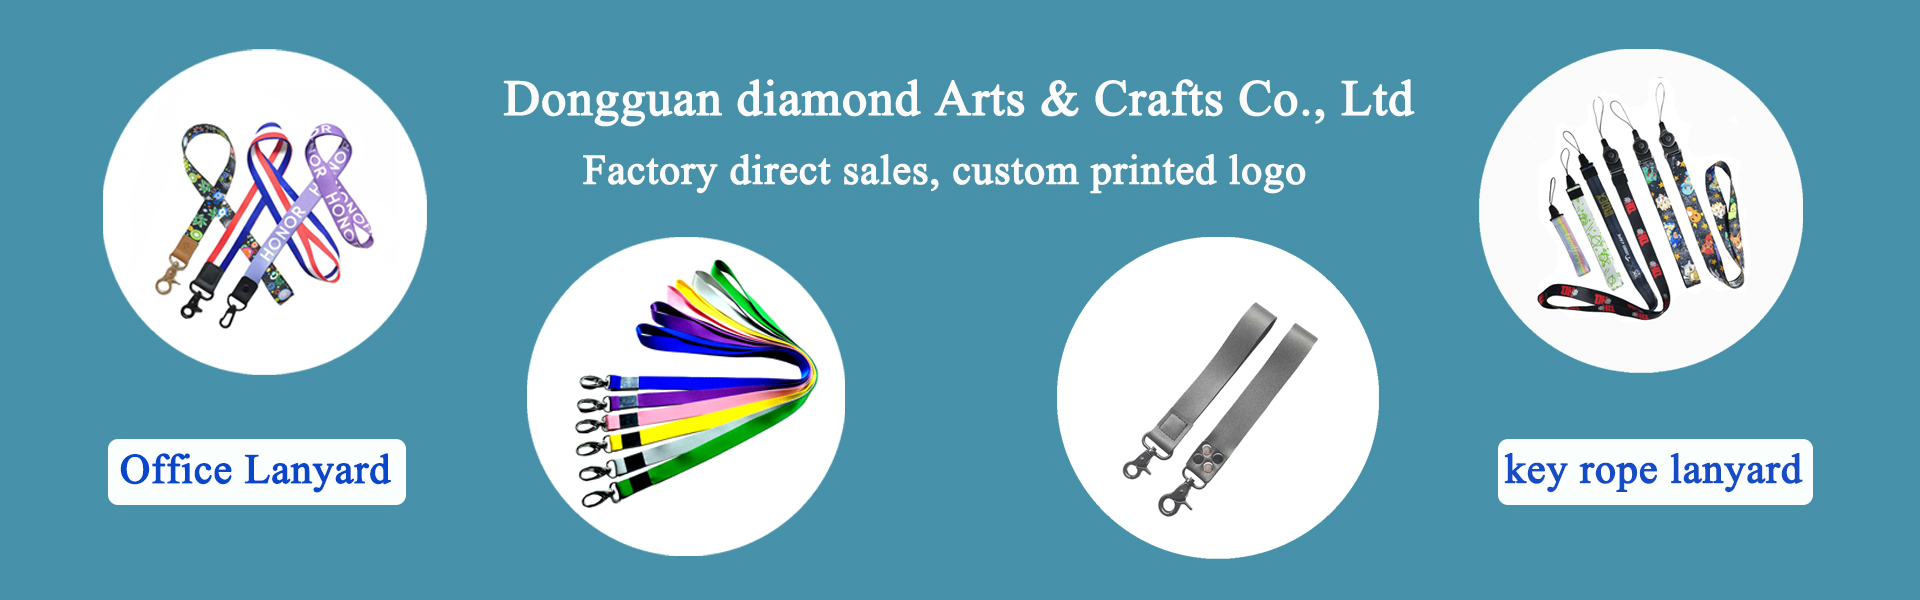 Lanyard, dodatki odzieżowe, artykuły dla zwierząt,Dongguan diamond Arts & Crafts Co., Ltd